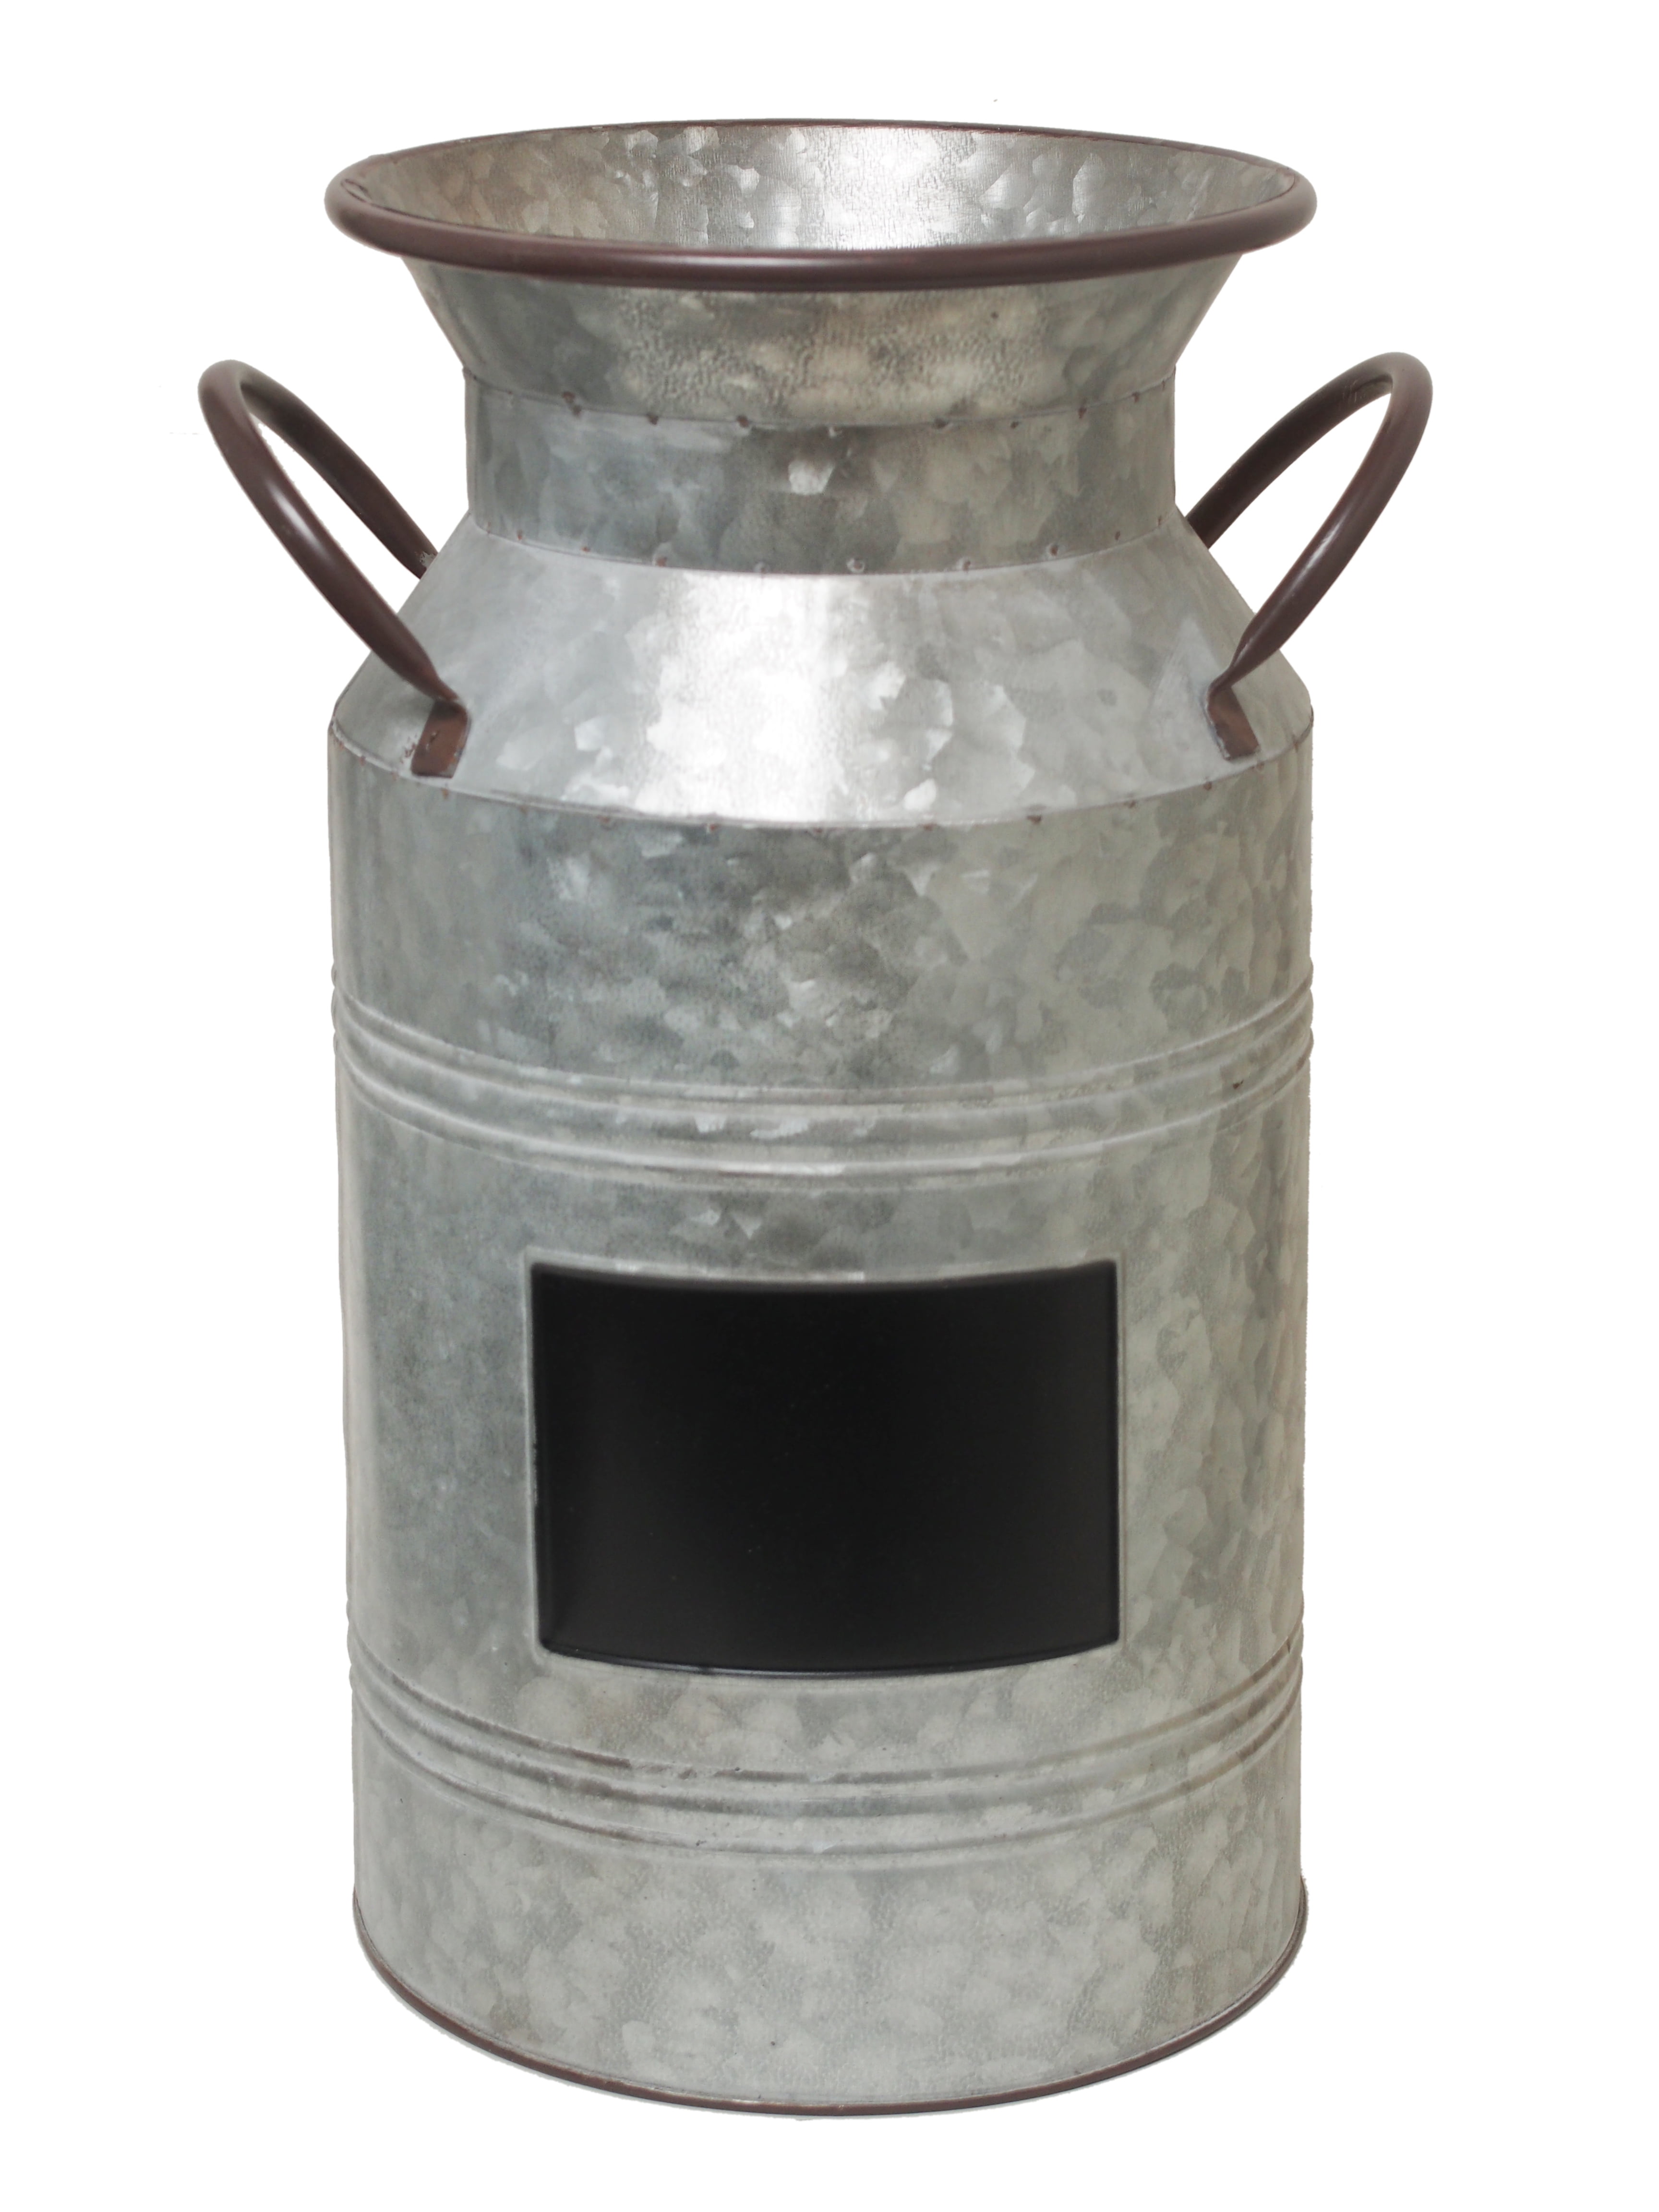 Black Metal Milk Can Vase Pot Farmhouse Home Decor 11" H NEW KK2507M-BK 